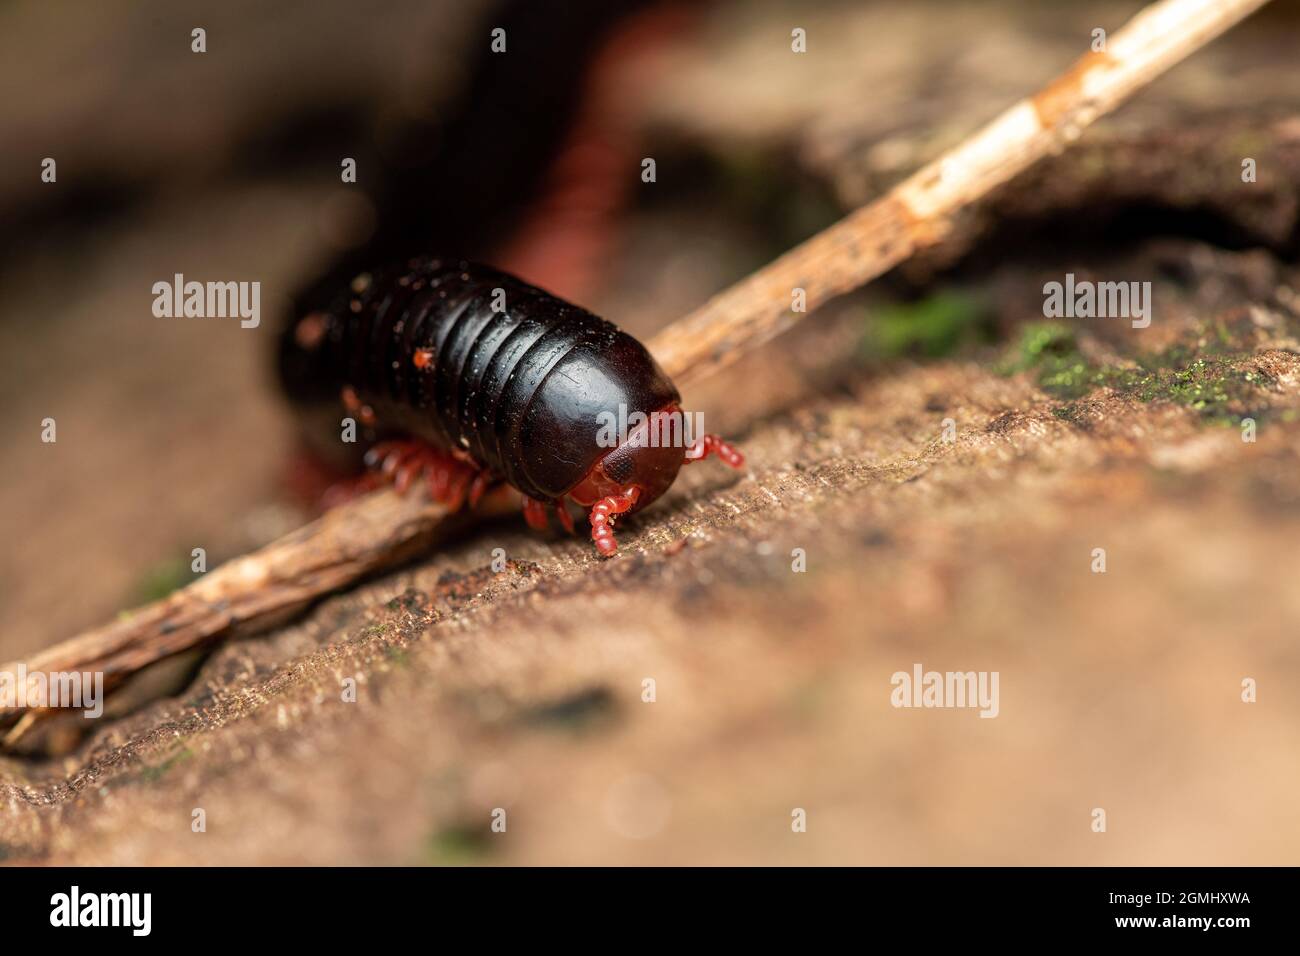 primo piano di un millipede rosso con zampe, vista frontale bassa Foto Stock